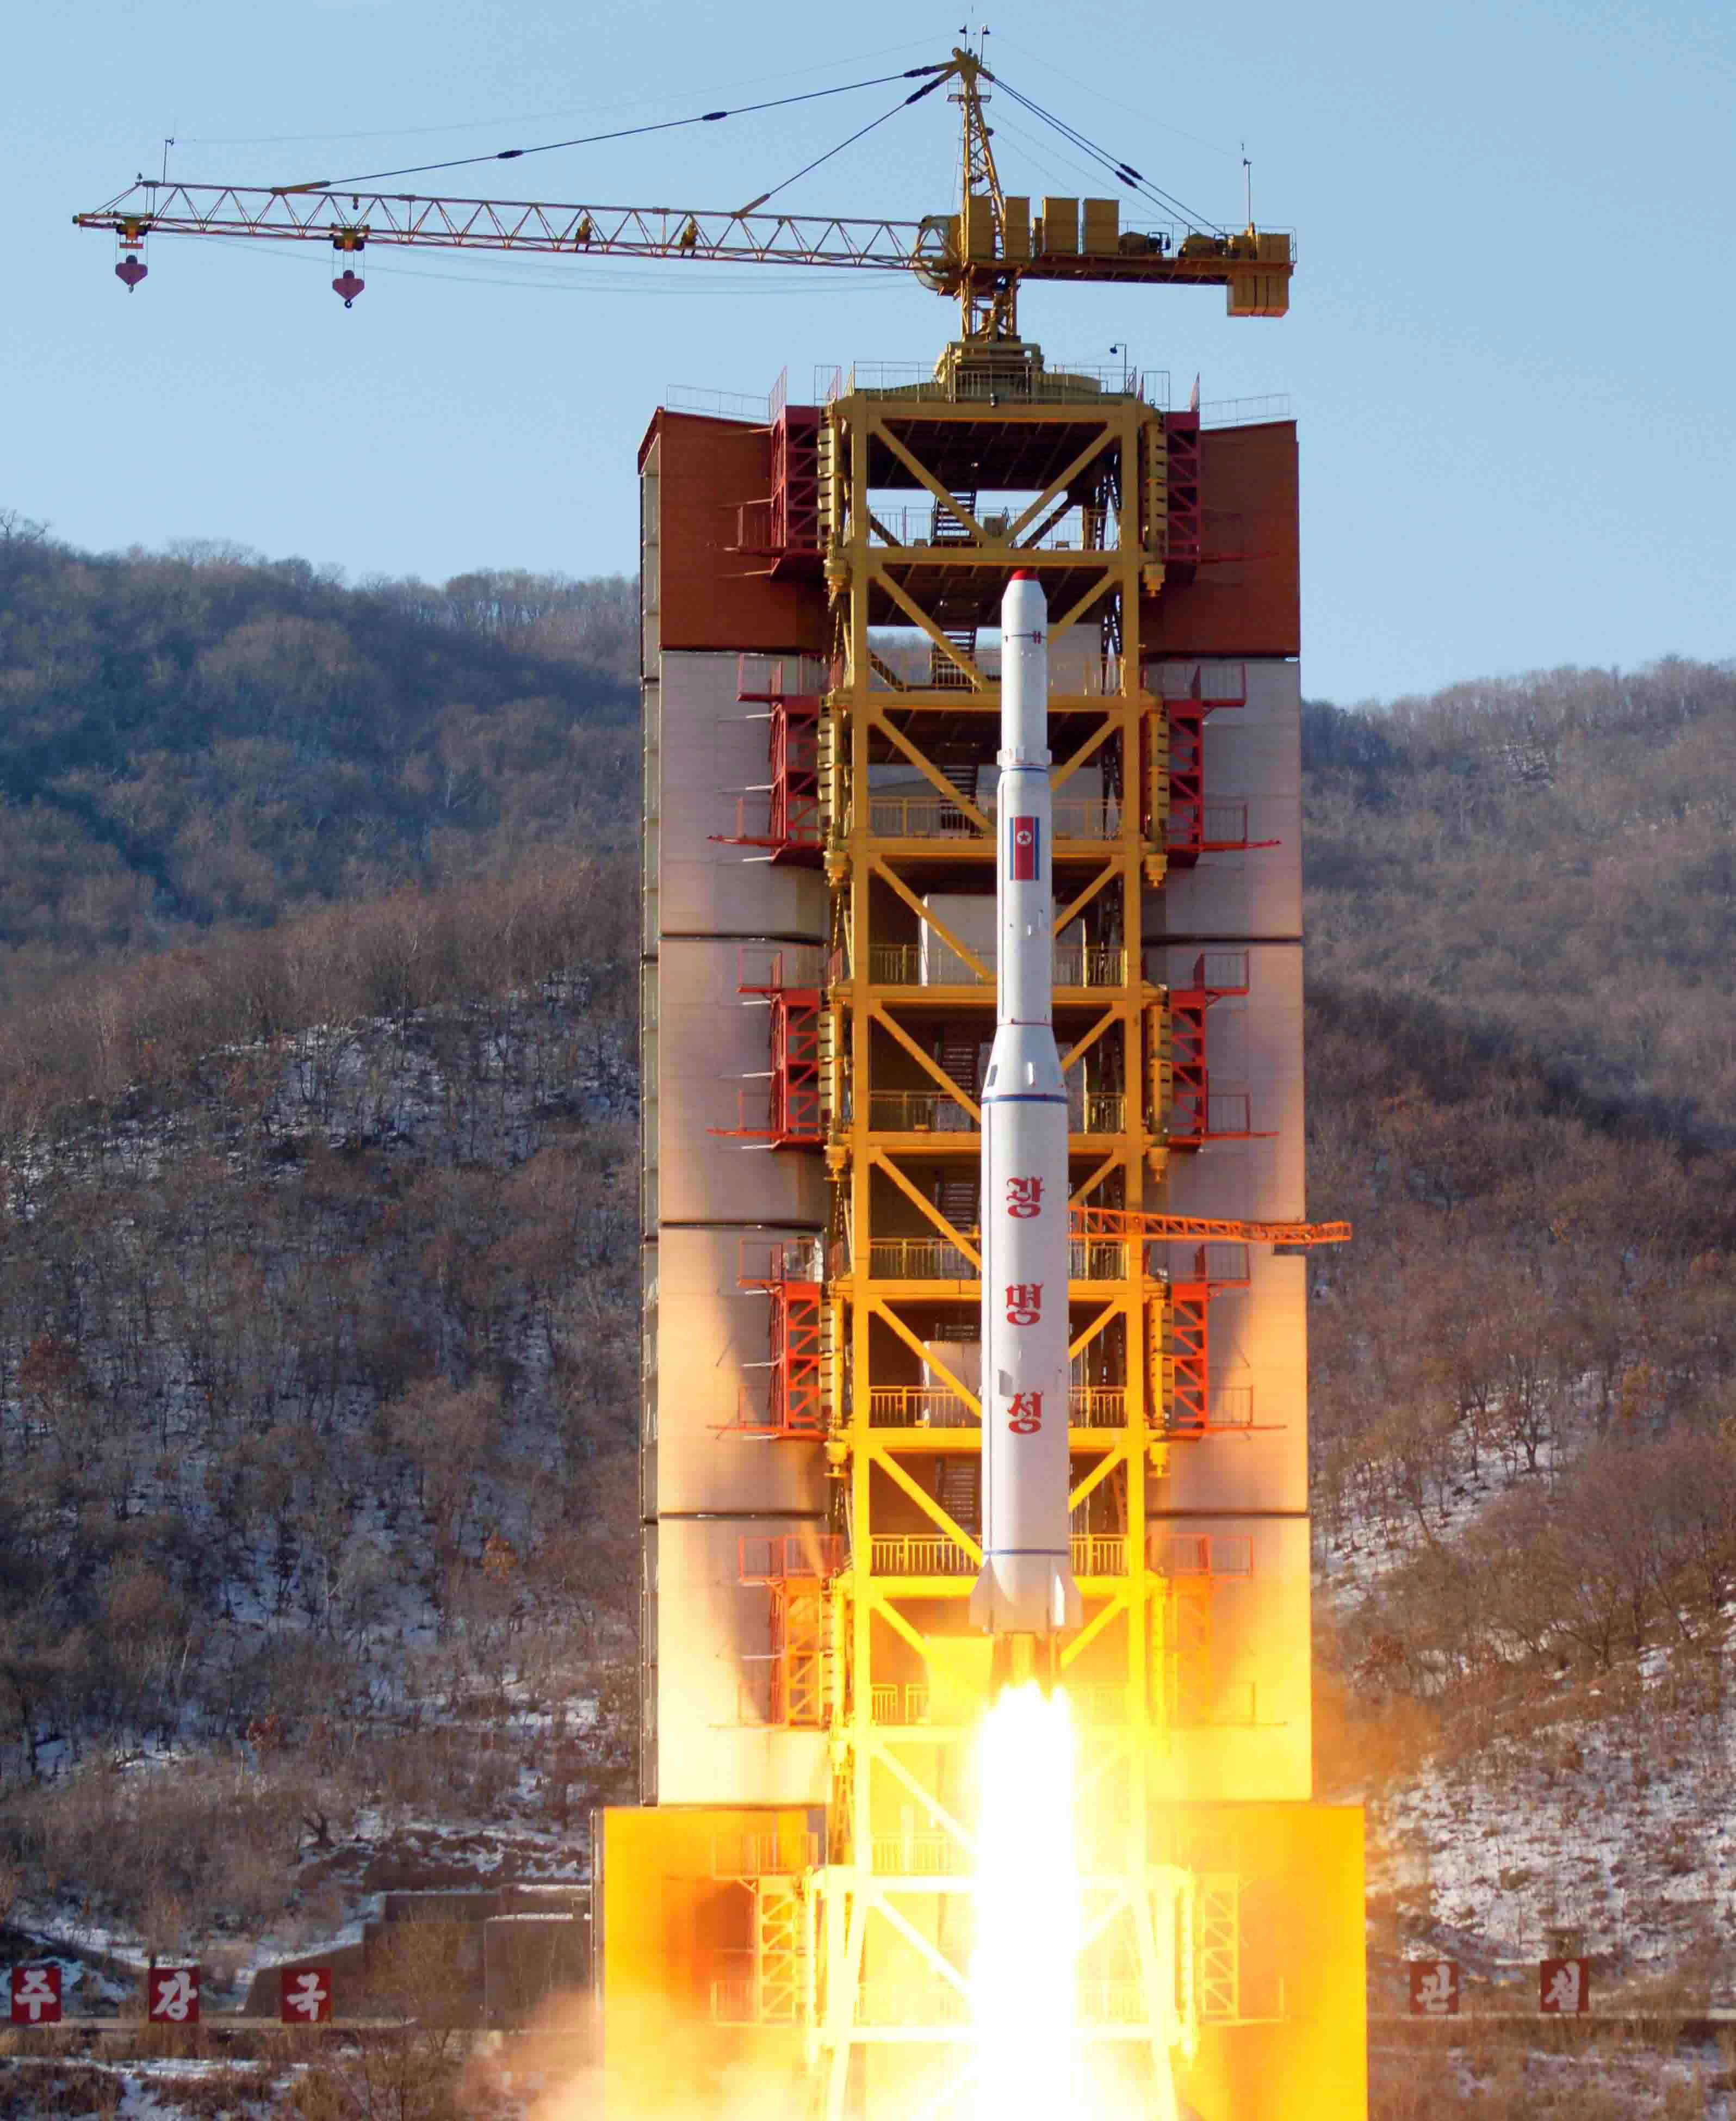 Νέο πύραυλο πάνω από την Ιαπωνία εκτόξευσε η Βόρεια Κορέα